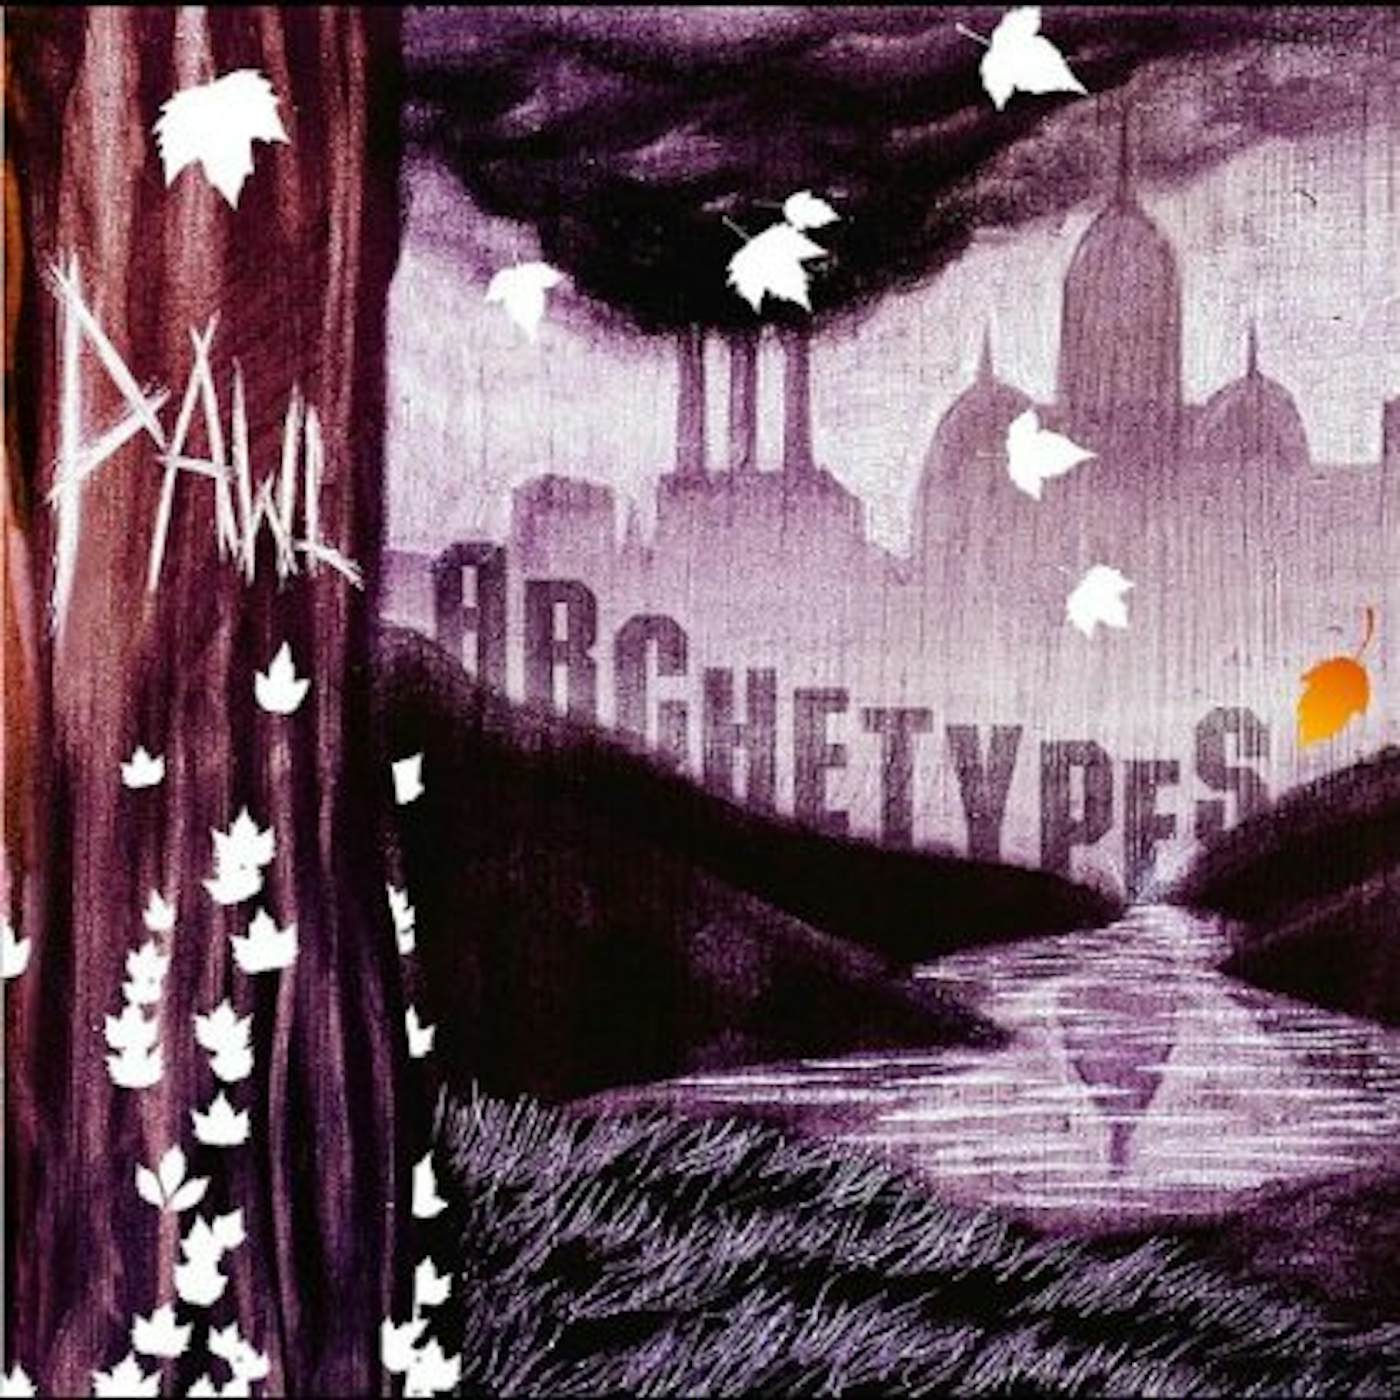 Pawl ARCHETYPES CD